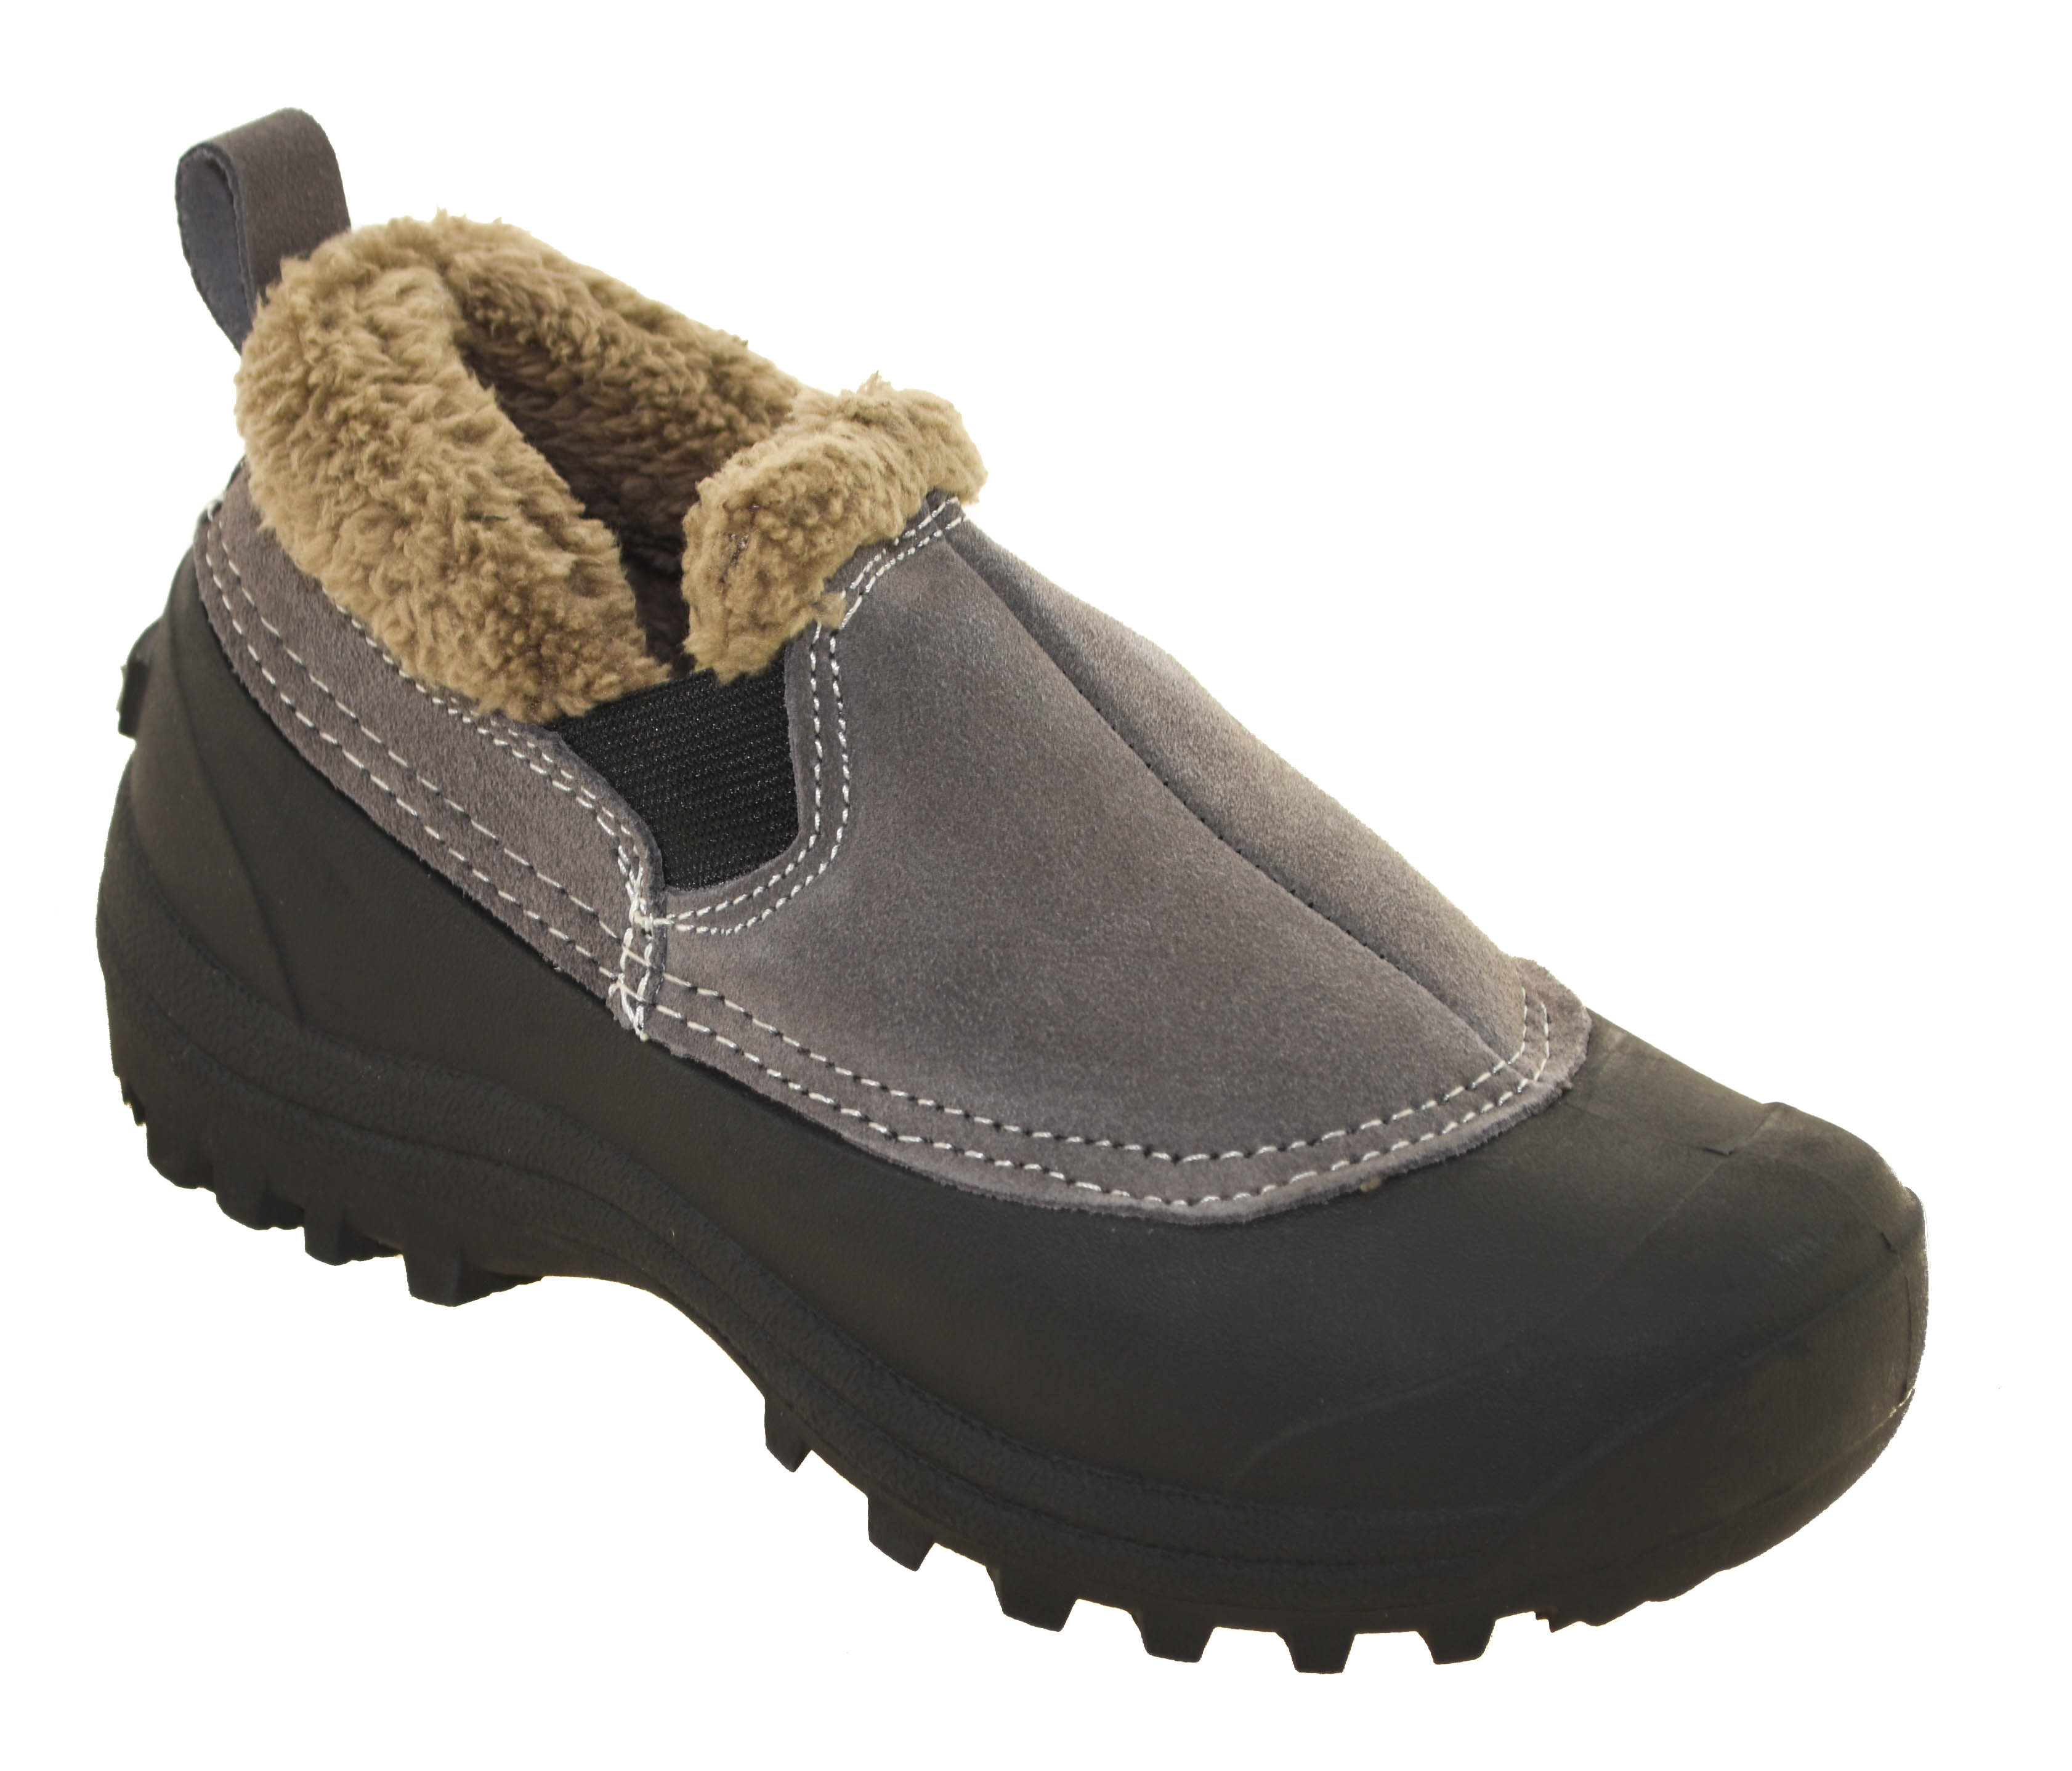 Northside Women's Kayla Waterproof Slip-On Winter Boots Stone 913004 | eBay